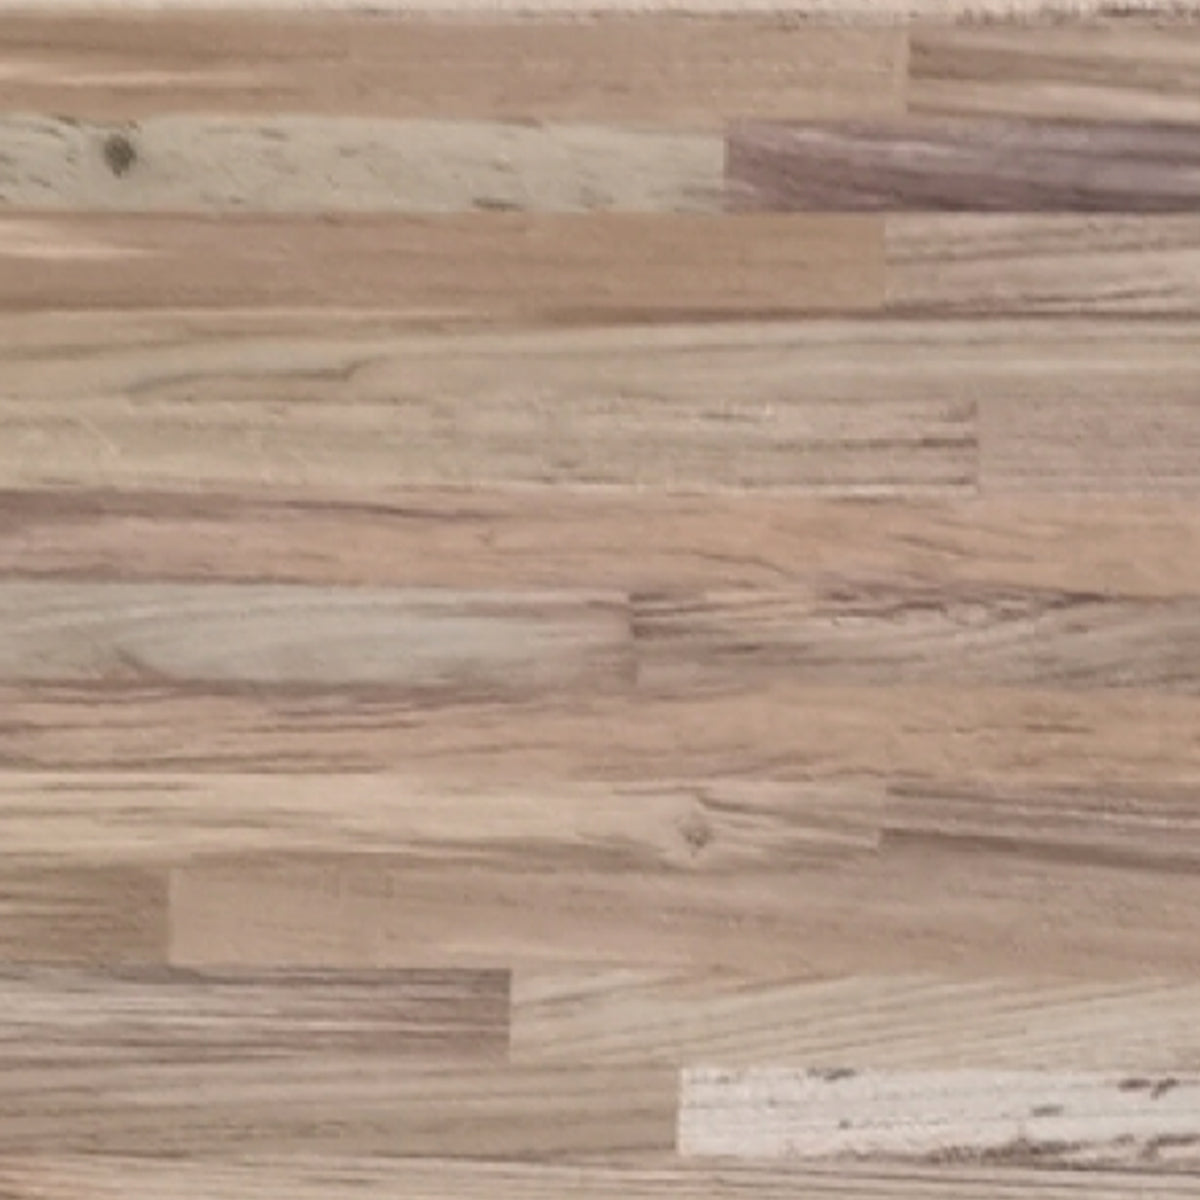 スクエア棚受け用 木製板 95cm×30cm×2cm (チーク材 1枚) 納期30営業日程度